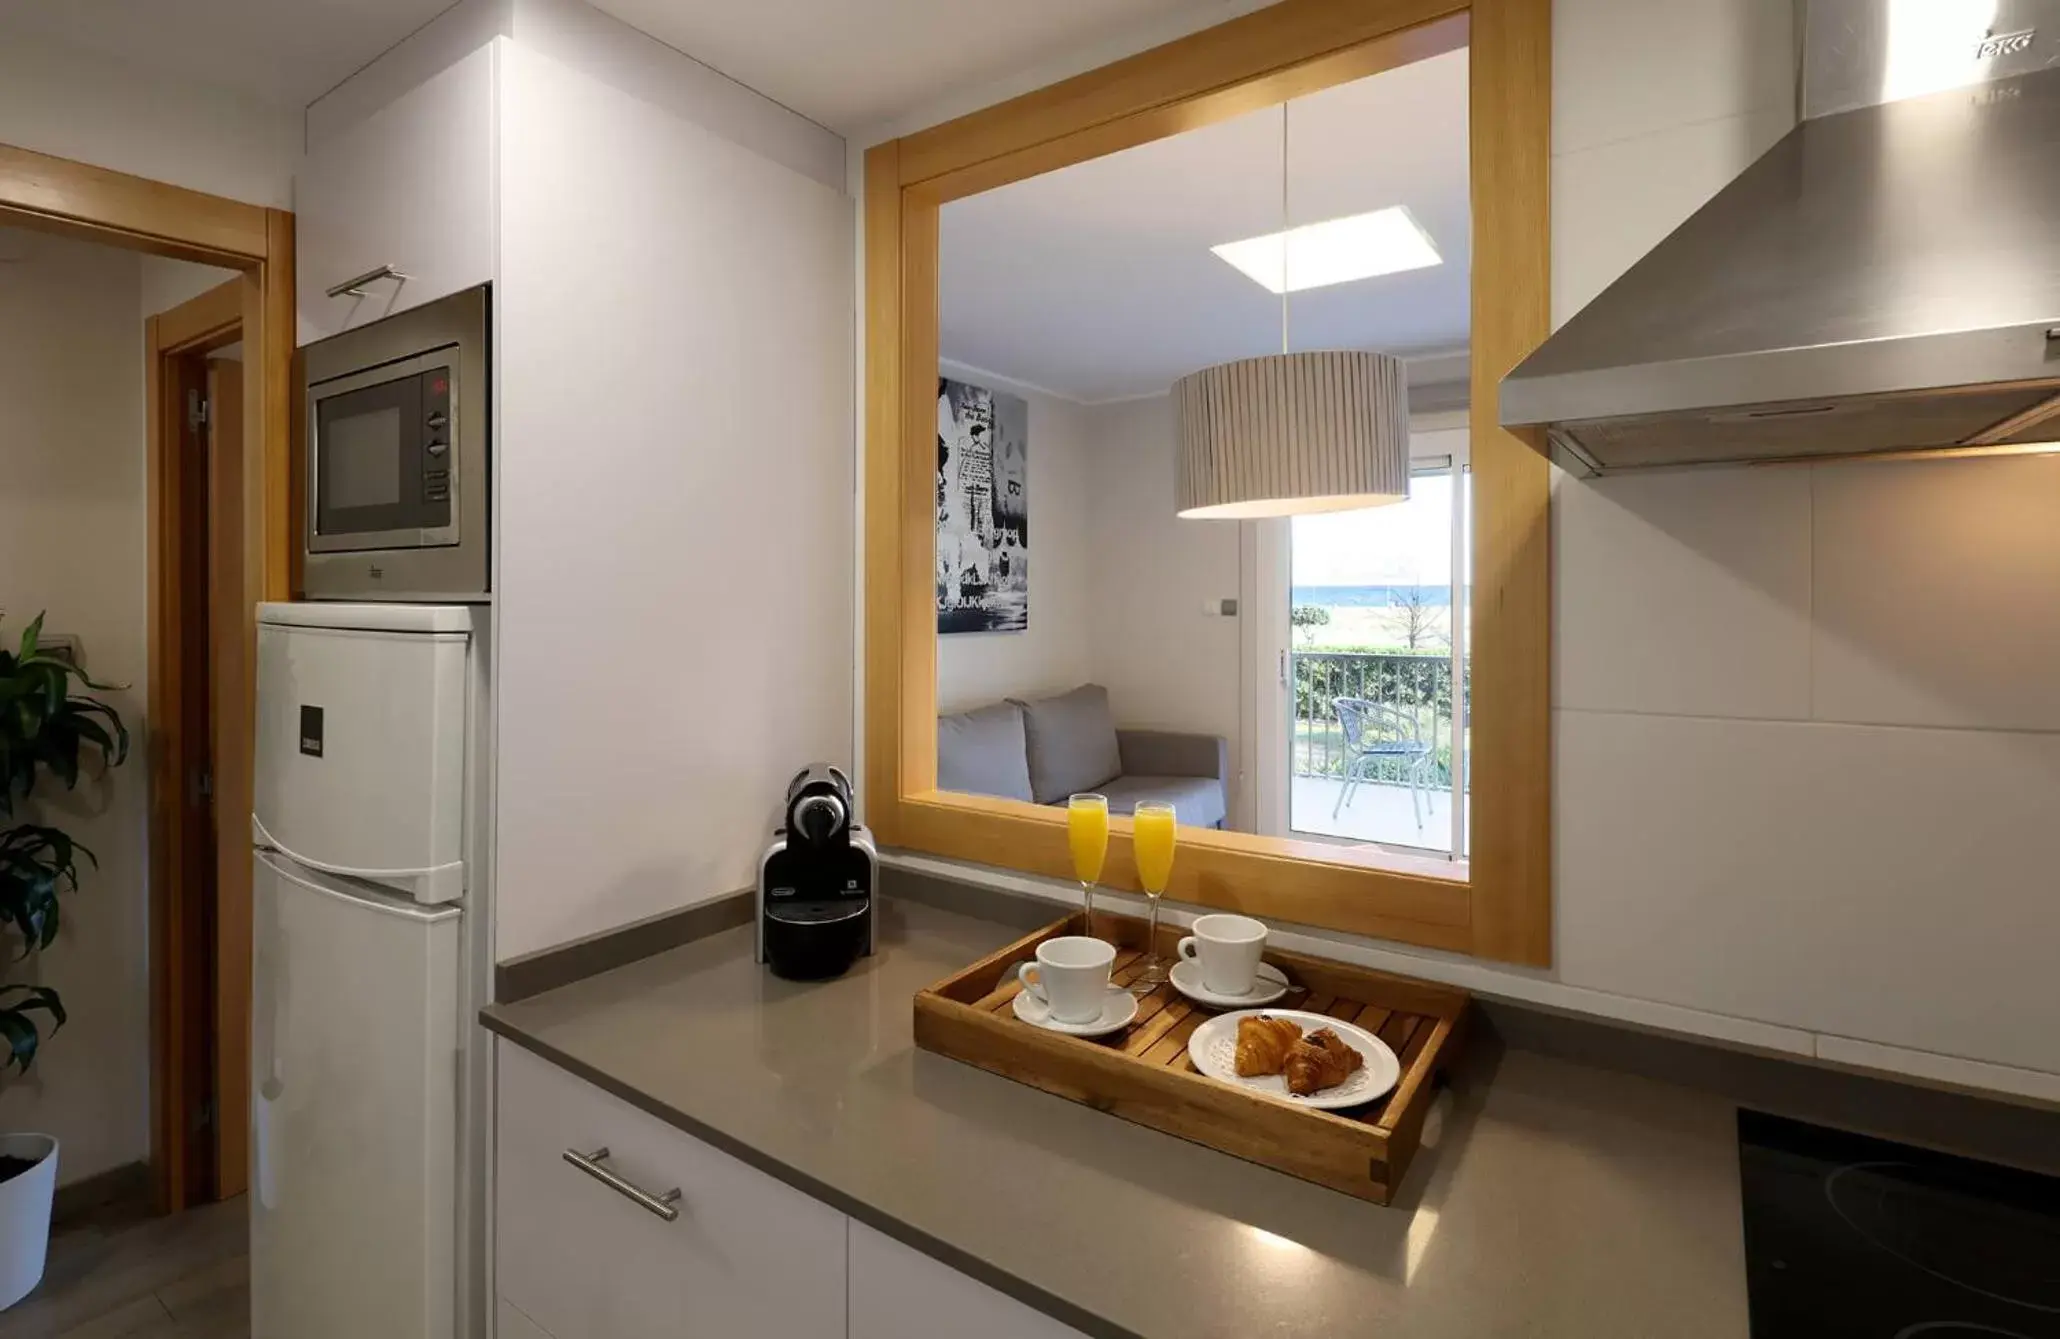 Kitchen or kitchenette, Kitchen/Kitchenette in Aparthotel Solifemar